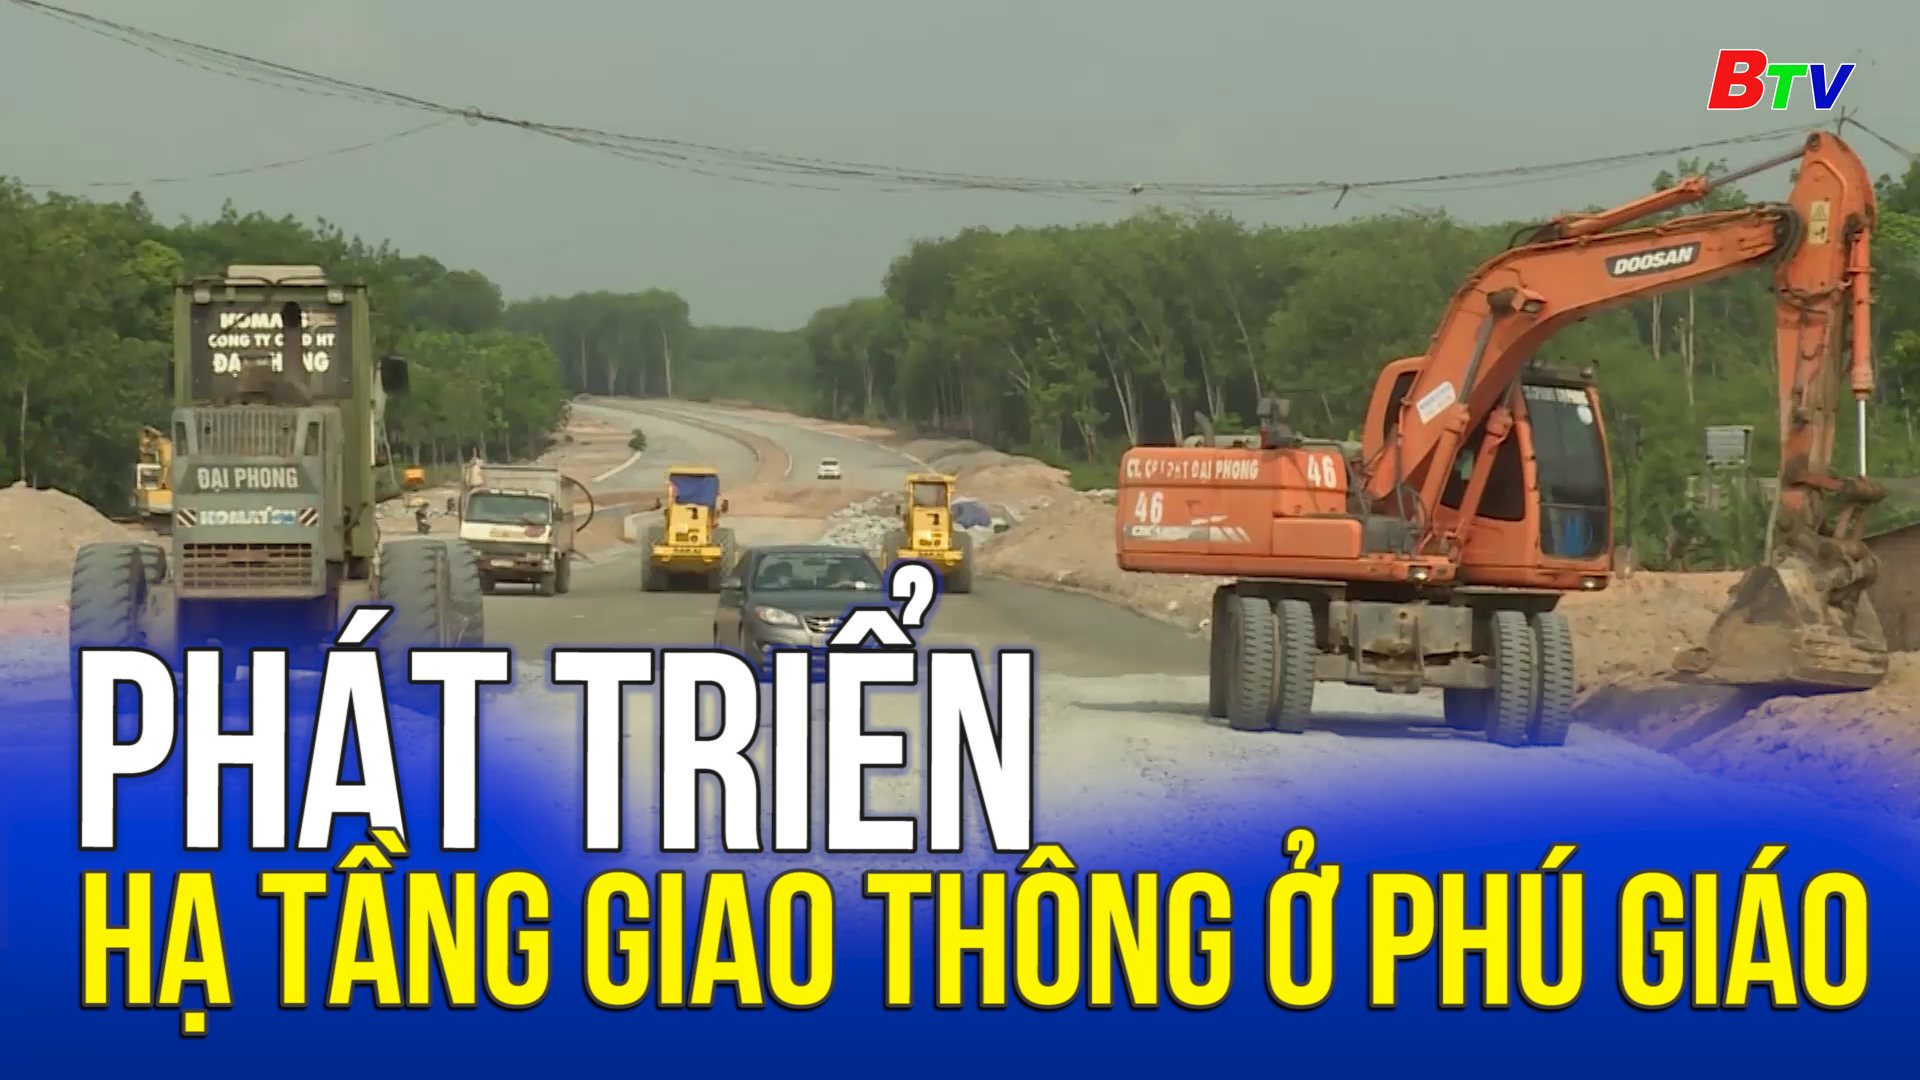 Phát triển hạ tầng giao thông ở Phú Giáo